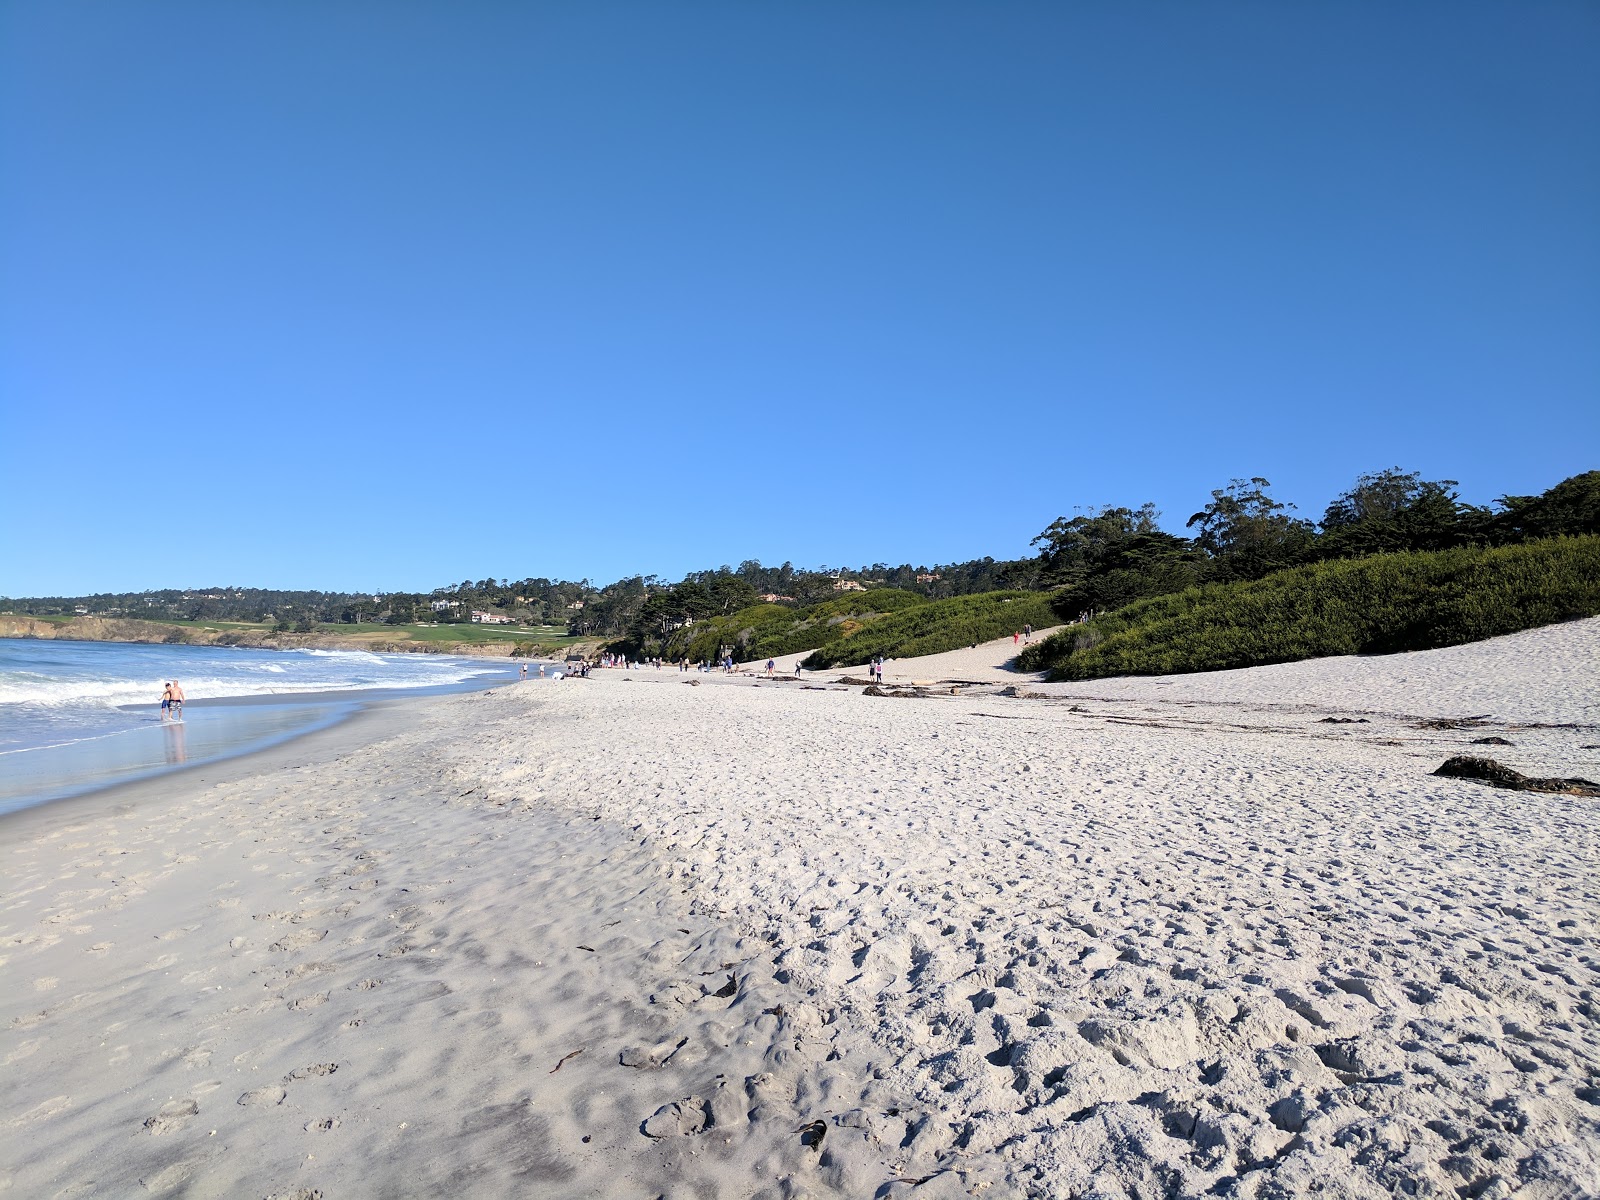 Carmel Beach'in fotoğrafı beyaz ince kum yüzey ile